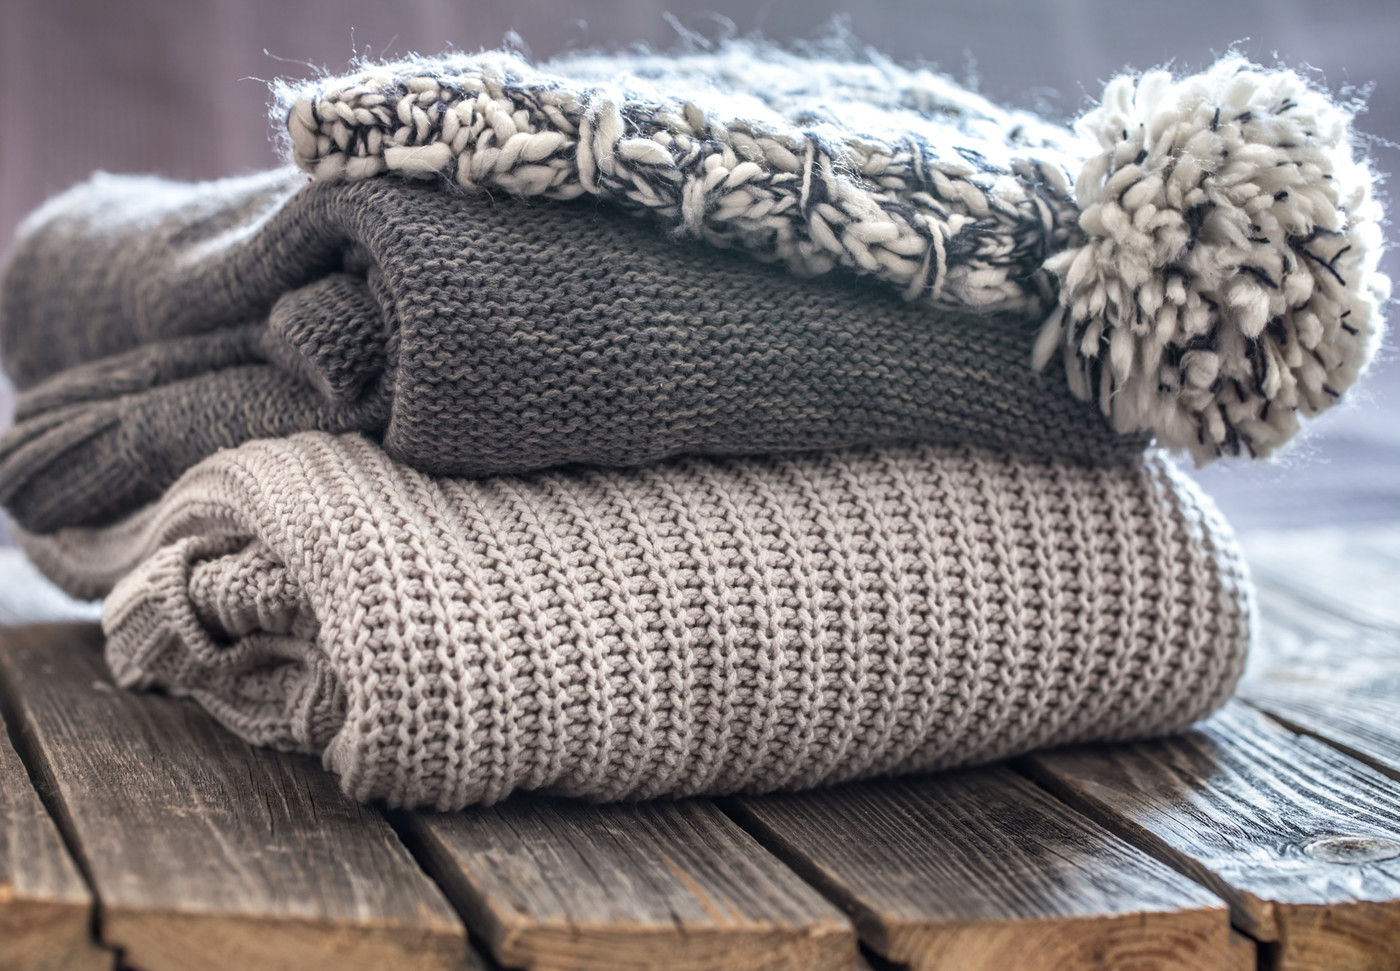 Halten im Winter warm: Kleider aus Naturfasern wie Wolle schützen vor Kälte.